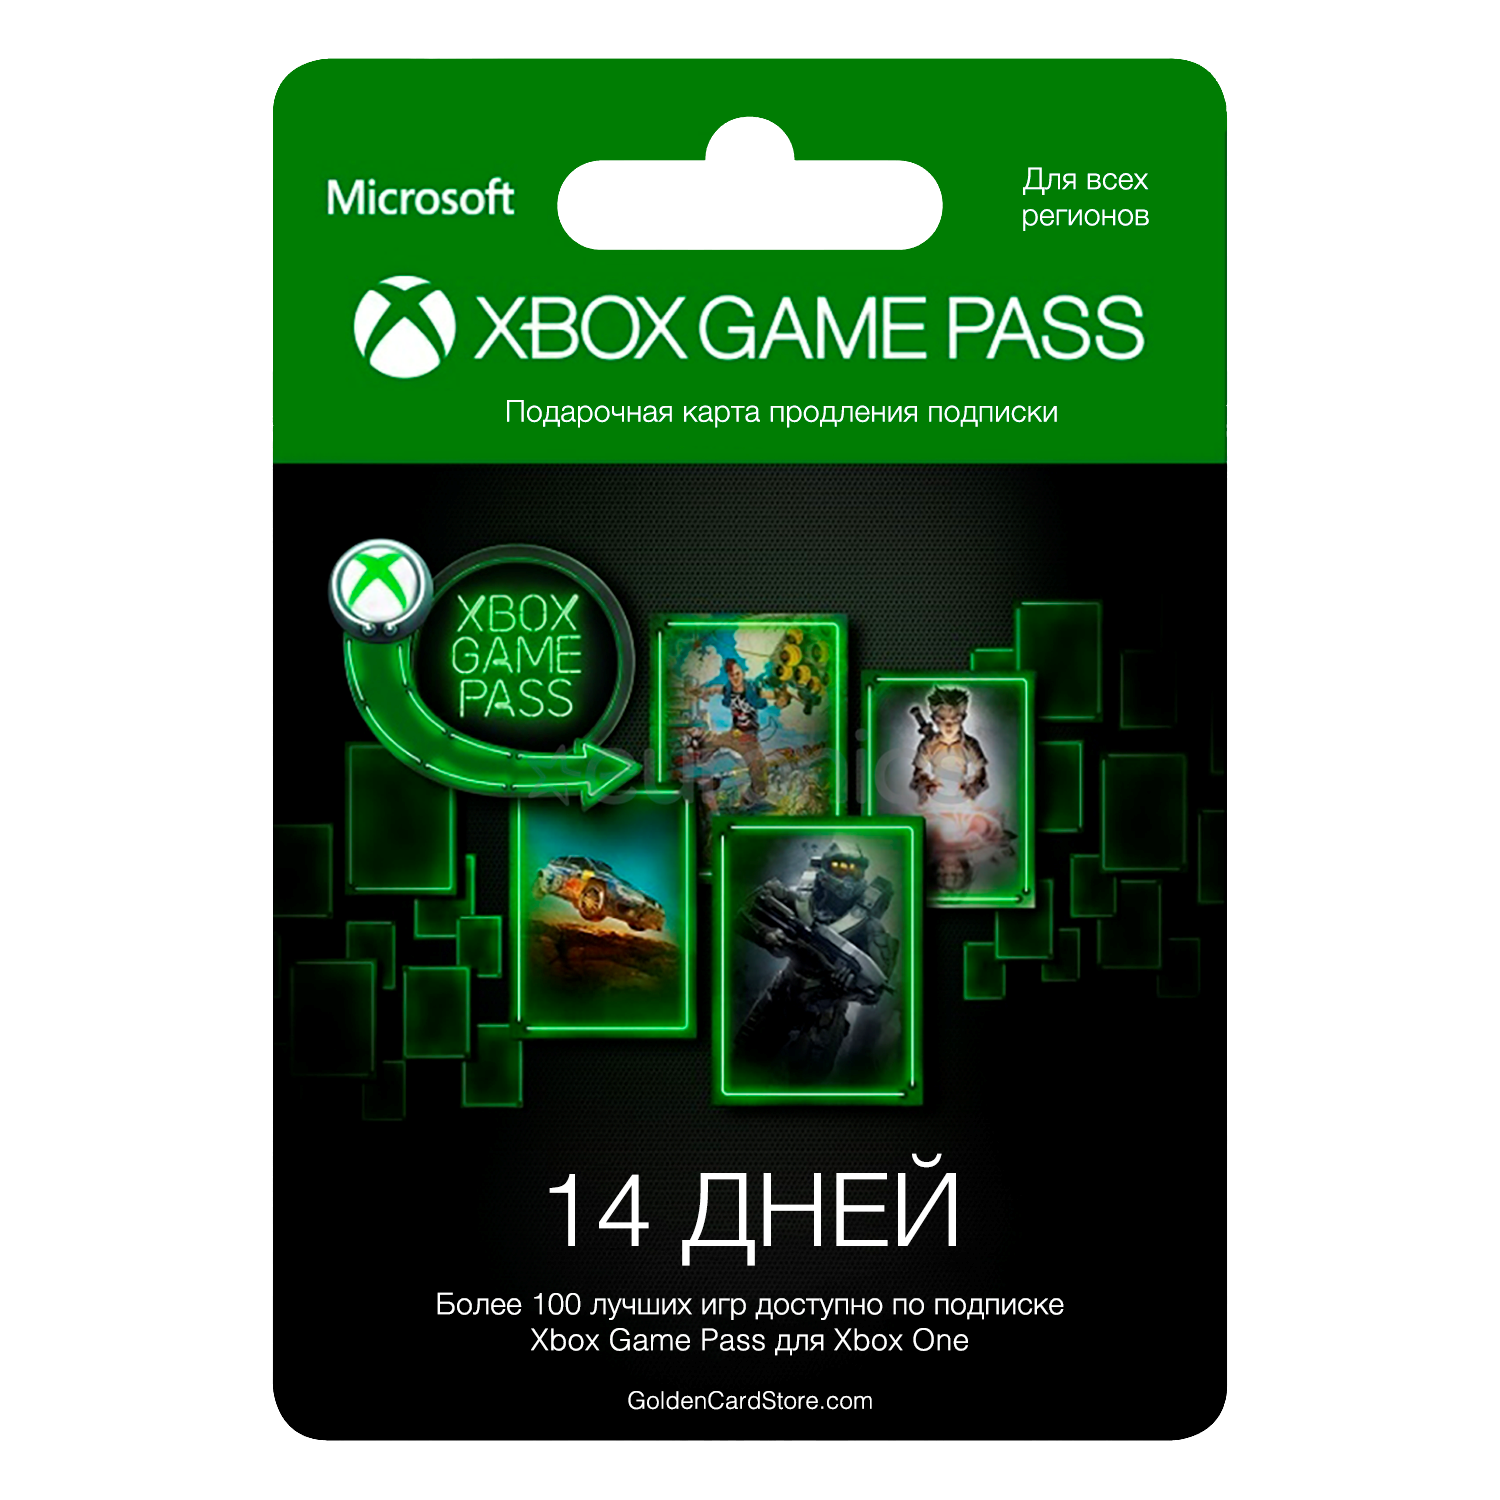 Игры по подписке xbox pass. Подписка гейм пасс на Xbox one 1 месяц. Xbox game Pass 14 дней. Коды гейм пасс на Xbox one бесплатно. Xbox game Pass Microsoft.